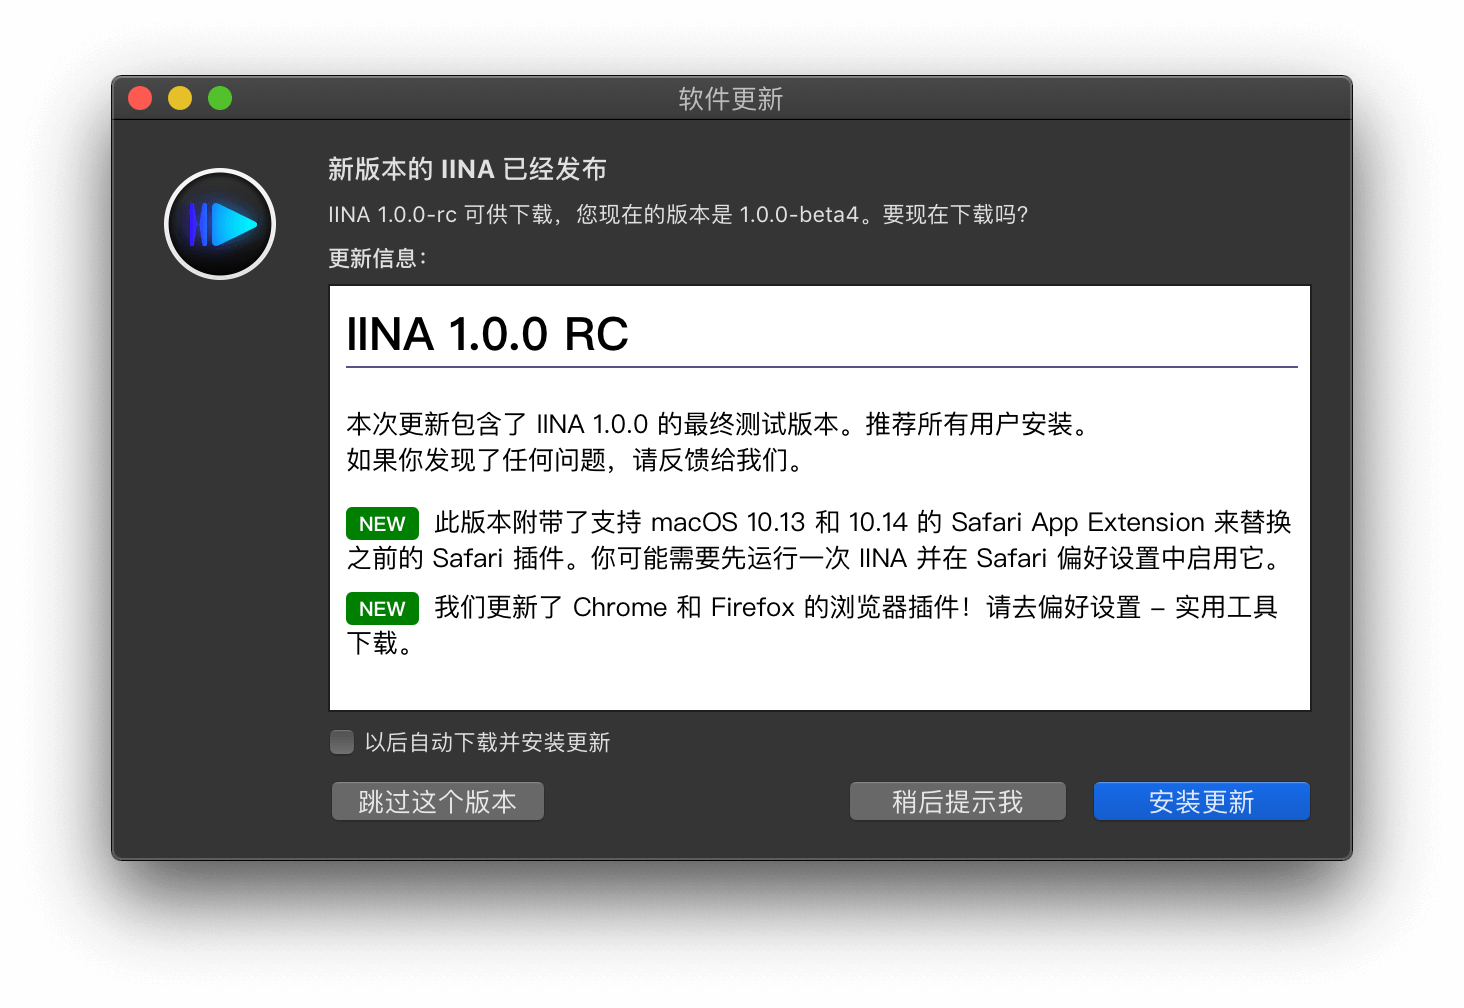 优秀的 macOS 视频播放器 IINA 发布 1.0.0 RC，支持从浏览器播放 2